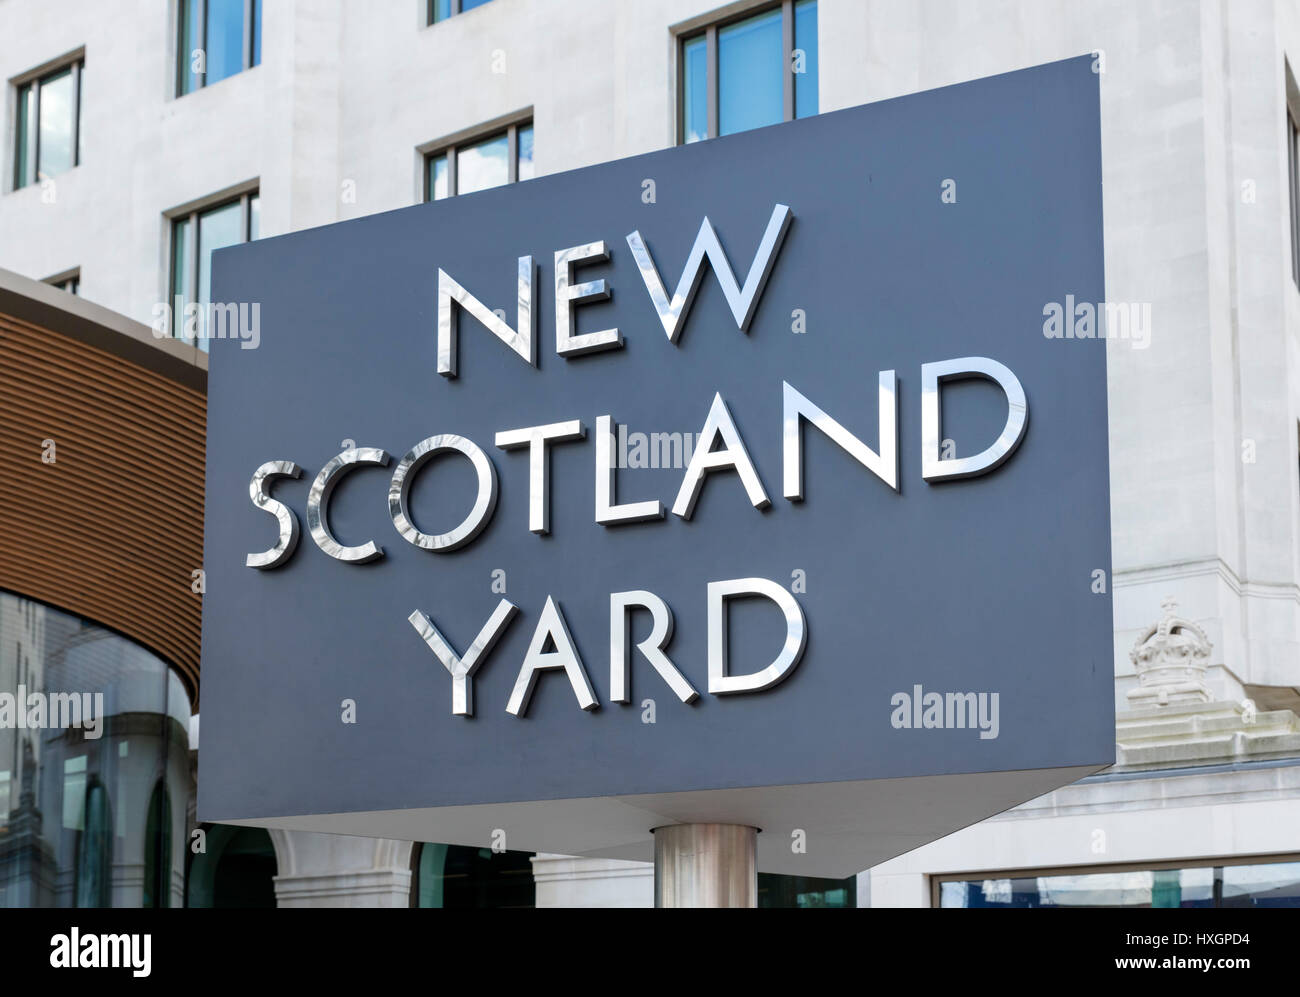 Segno girevole al di fuori della Metropolitan Police headquarters a New Scotland Yard, Victoria Embankment, London, England, Regno Unito Foto Stock